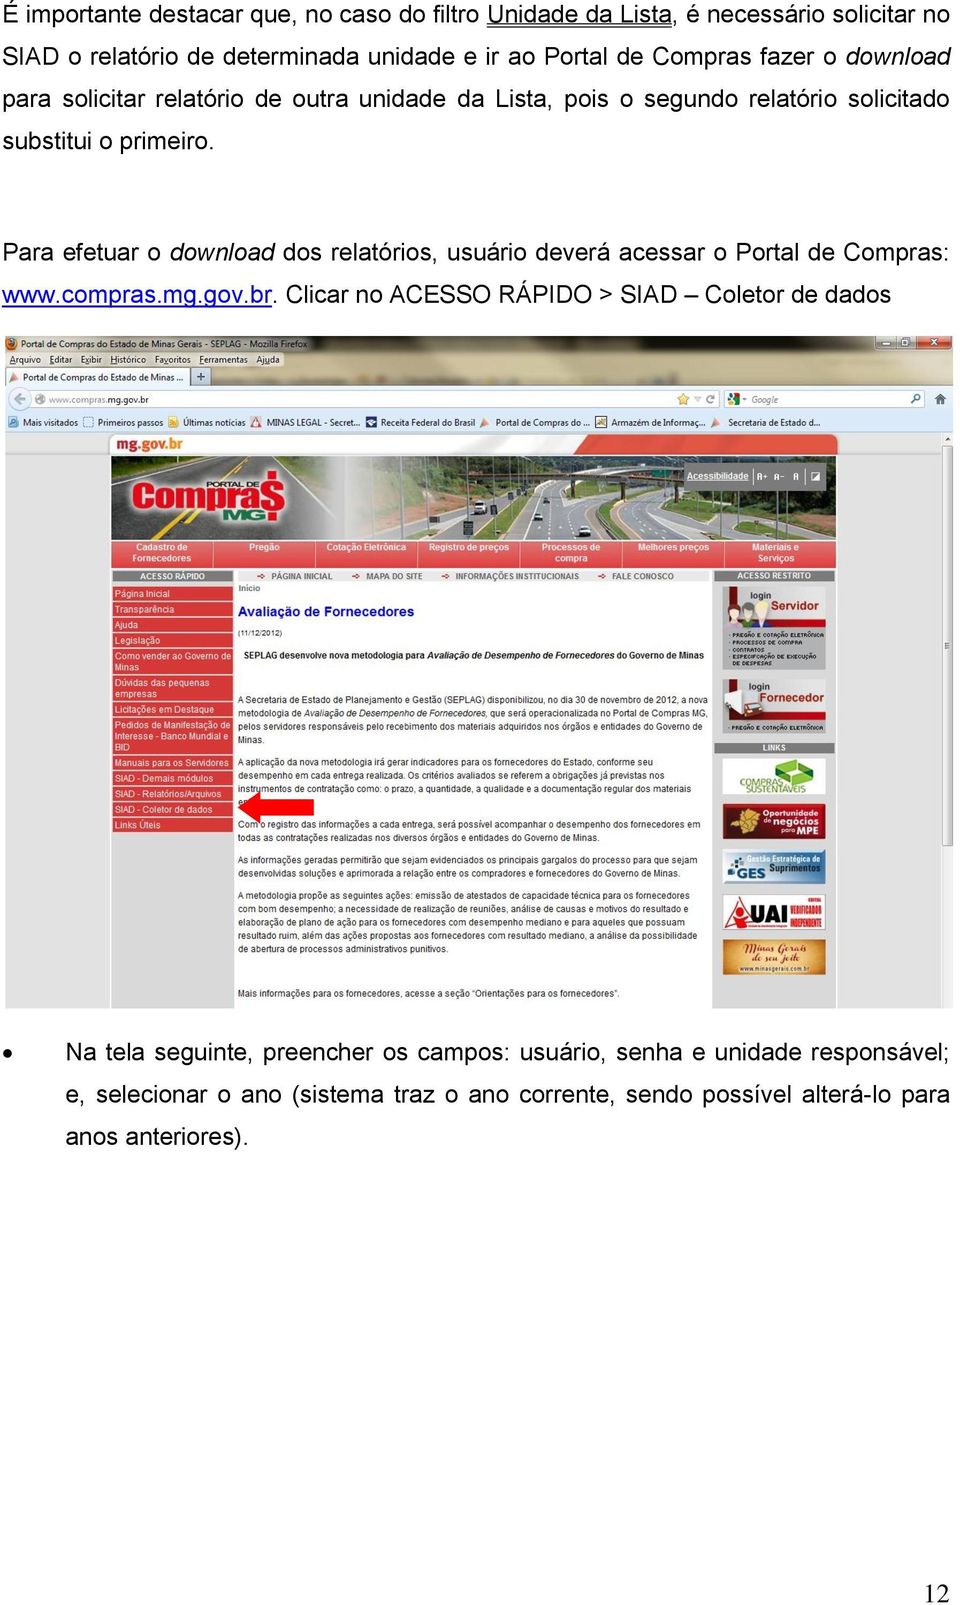 Para efetuar o download dos relatórios, usuário deverá acessar o Portal de Compras: www.compras.mg.gov.br.